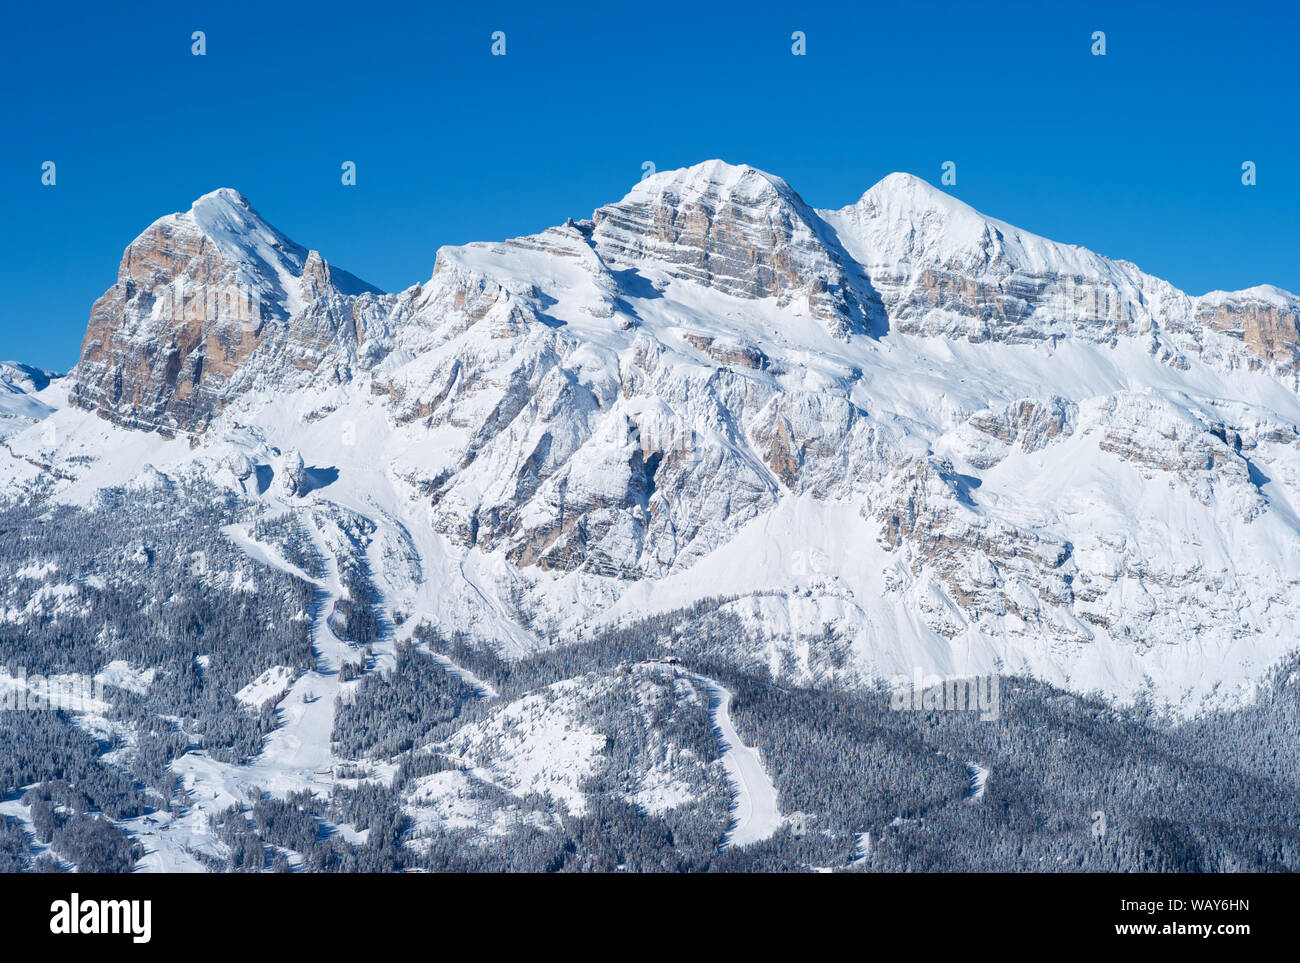 Tofana Peak Mountain Range im Winter mit Schnee bedeckt, die in der italienischen Dolomiten, berühmten Skigebiet Cortina d Ampezzo, Italien Stockfoto